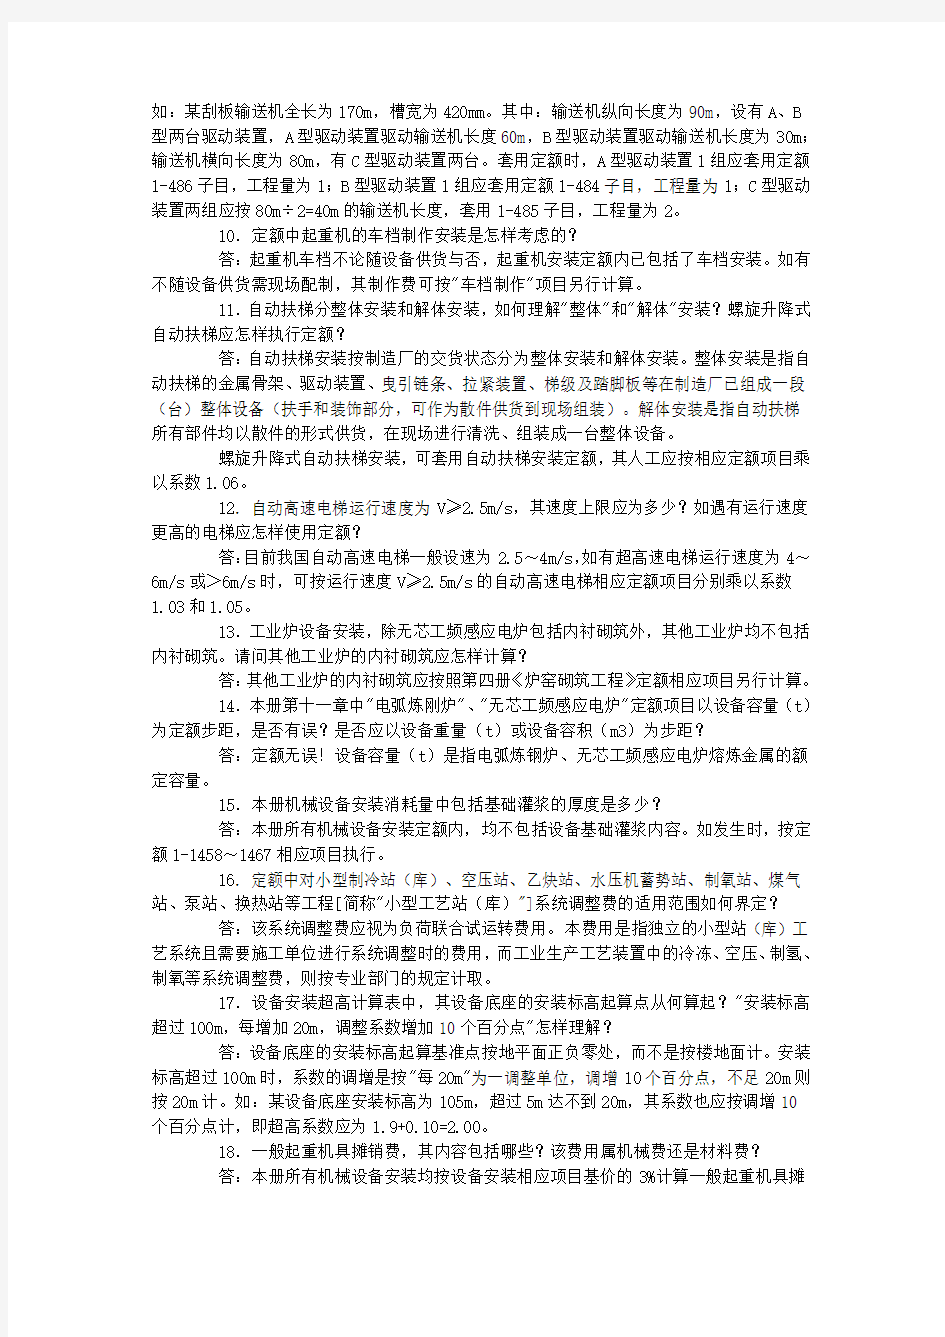 山东省安装工程消耗量定额解释(2003年).